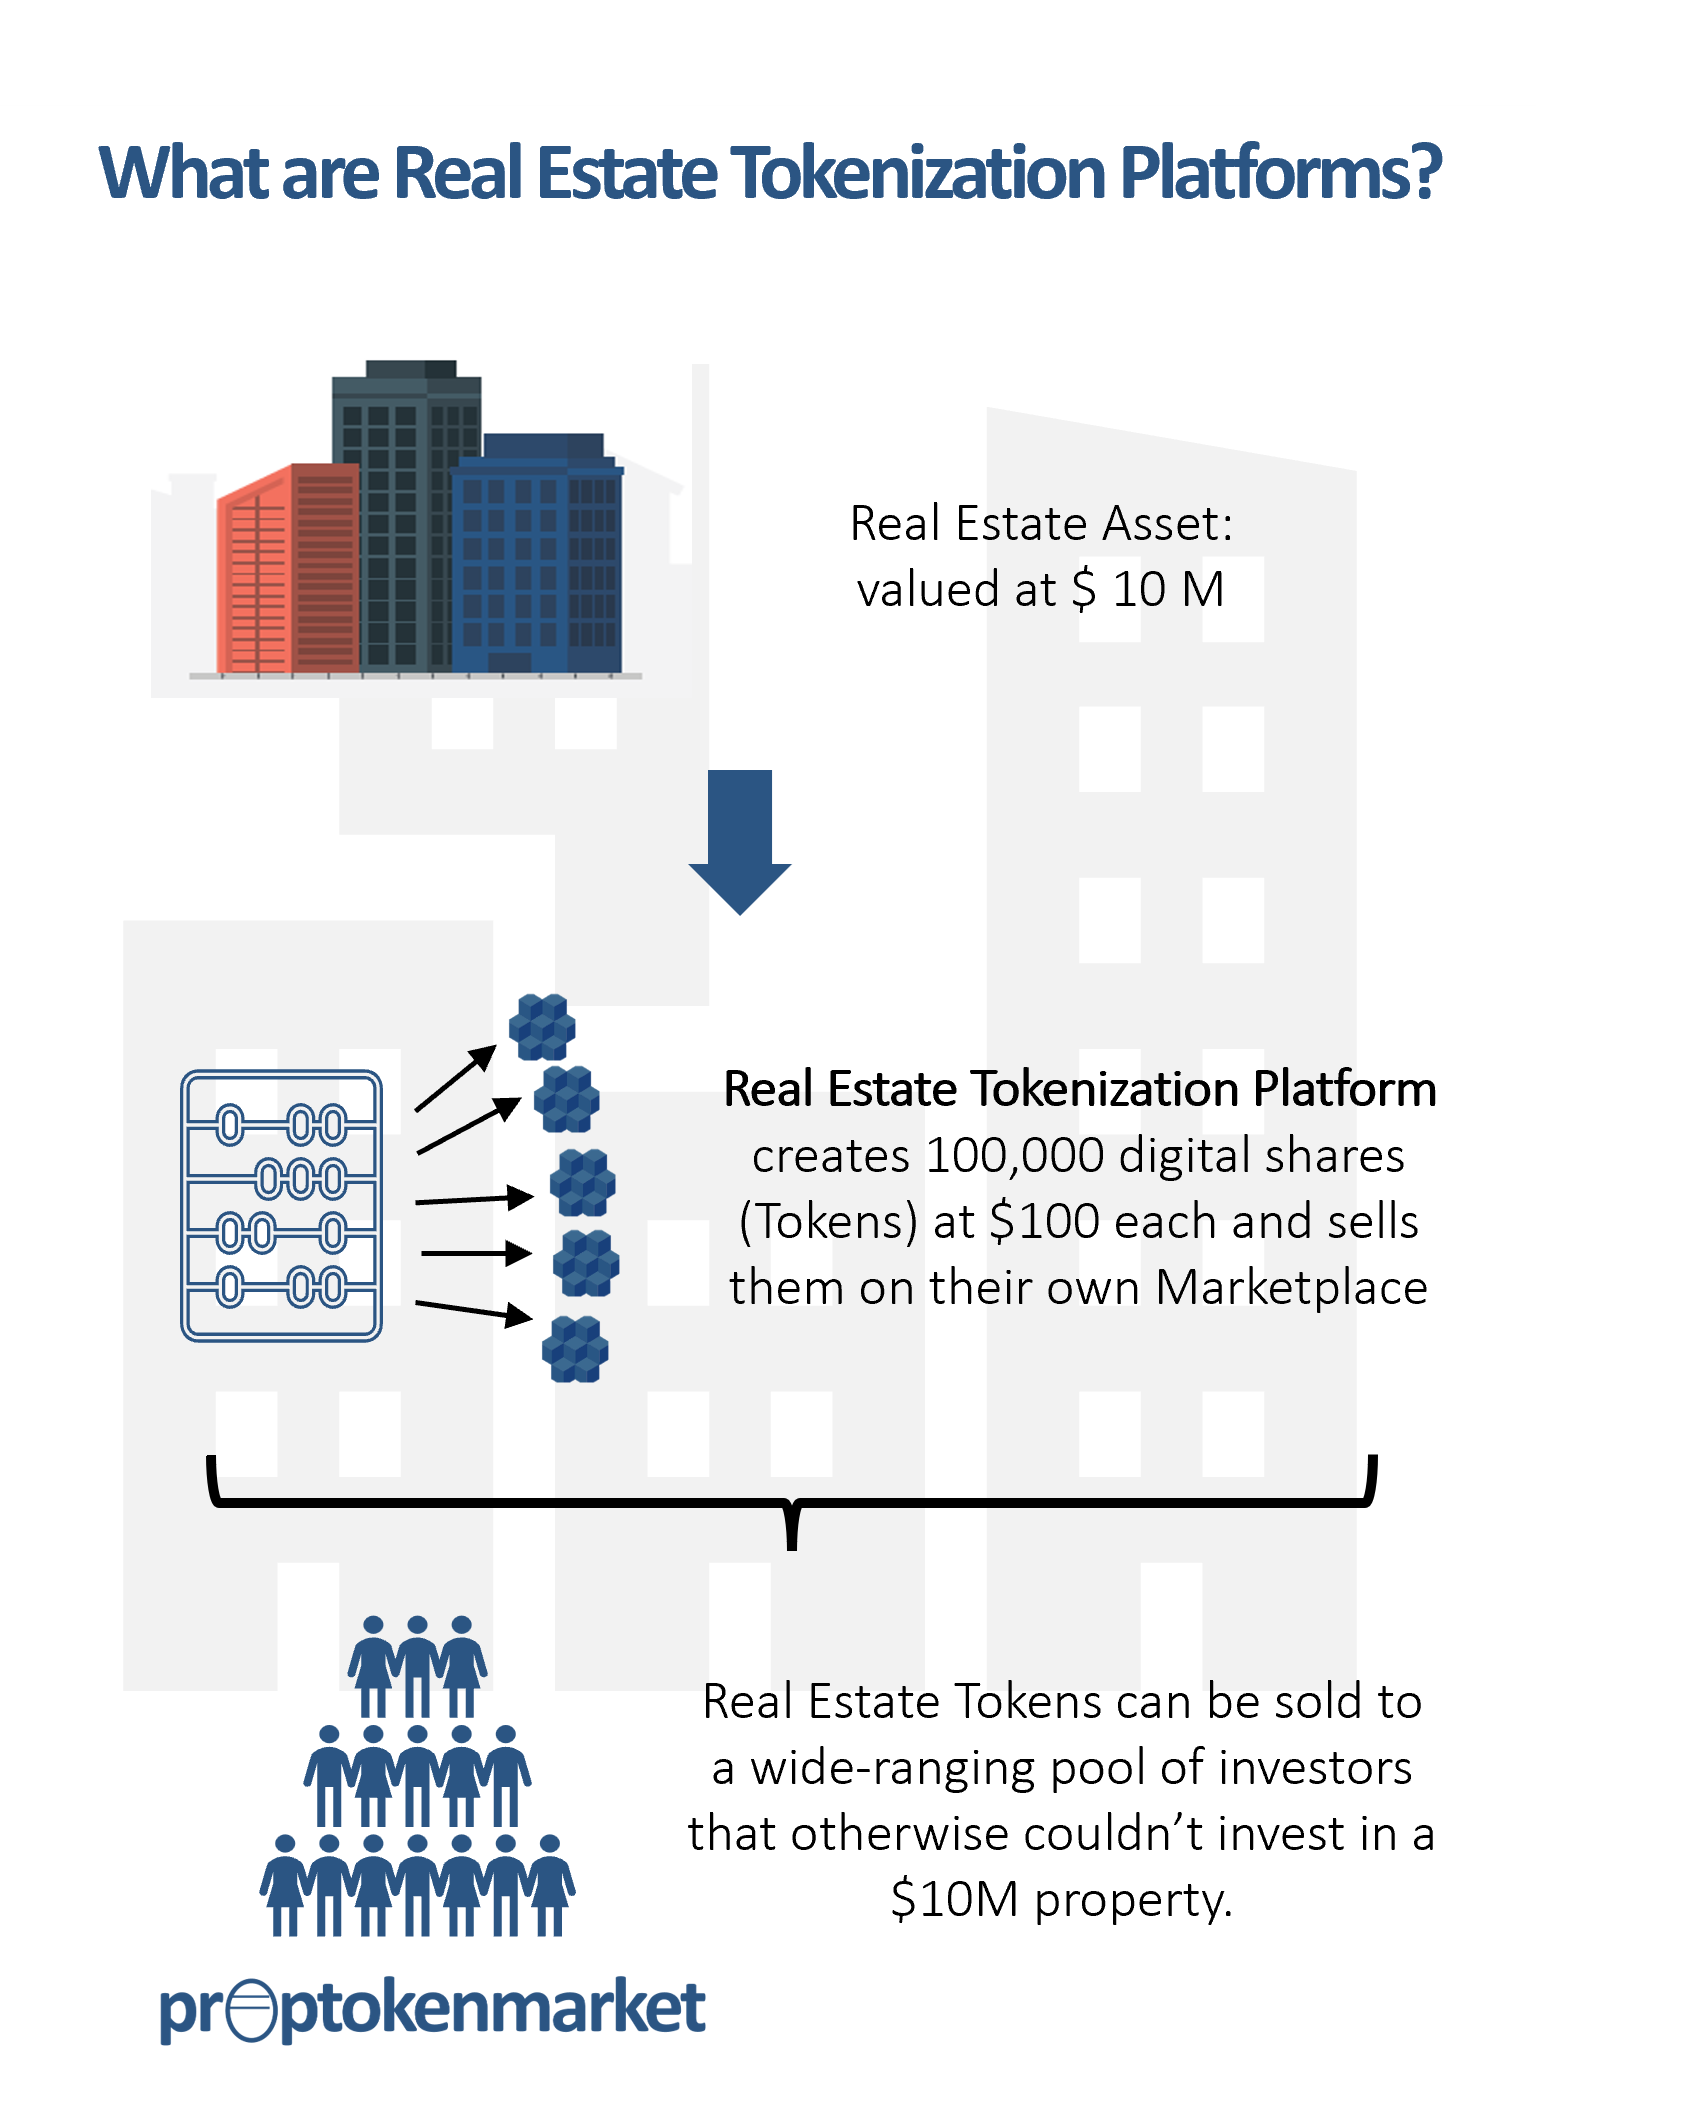 Real Estate Tokenization Platforms